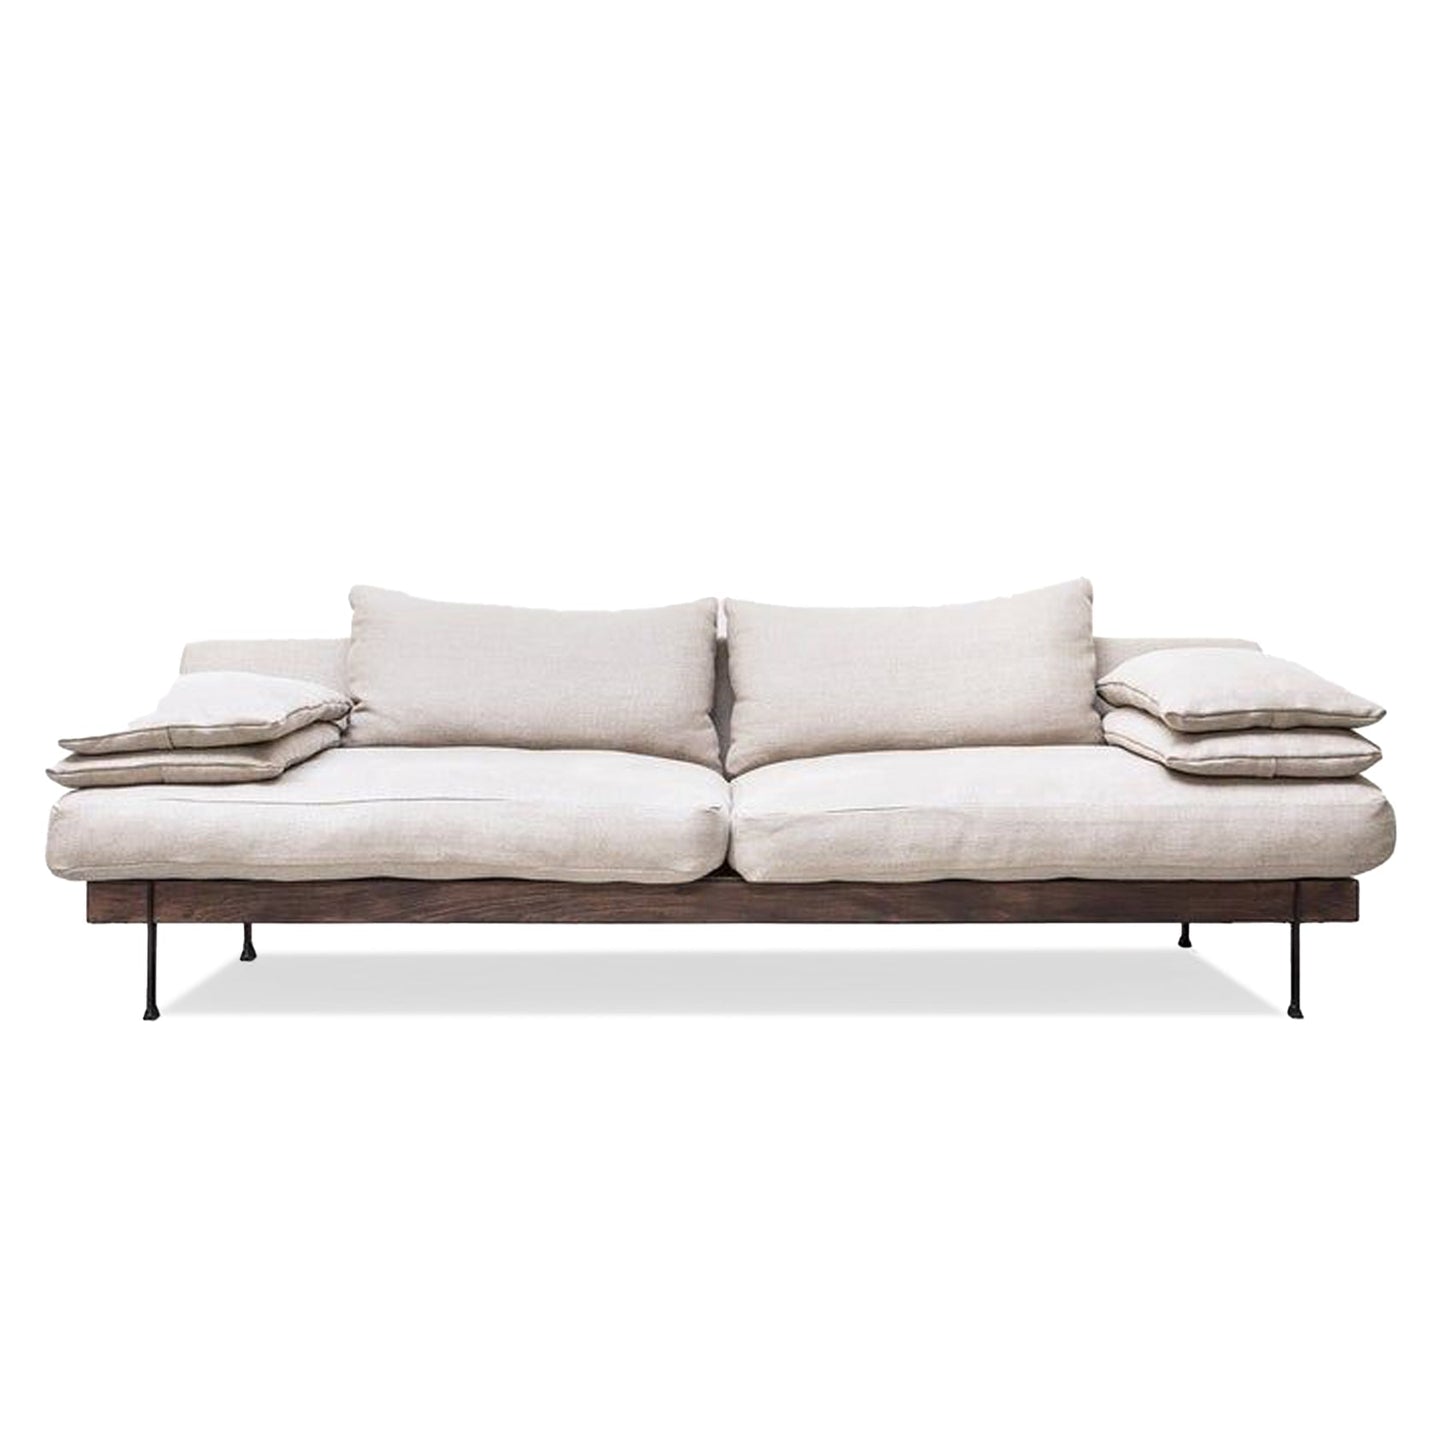 Amani sofa